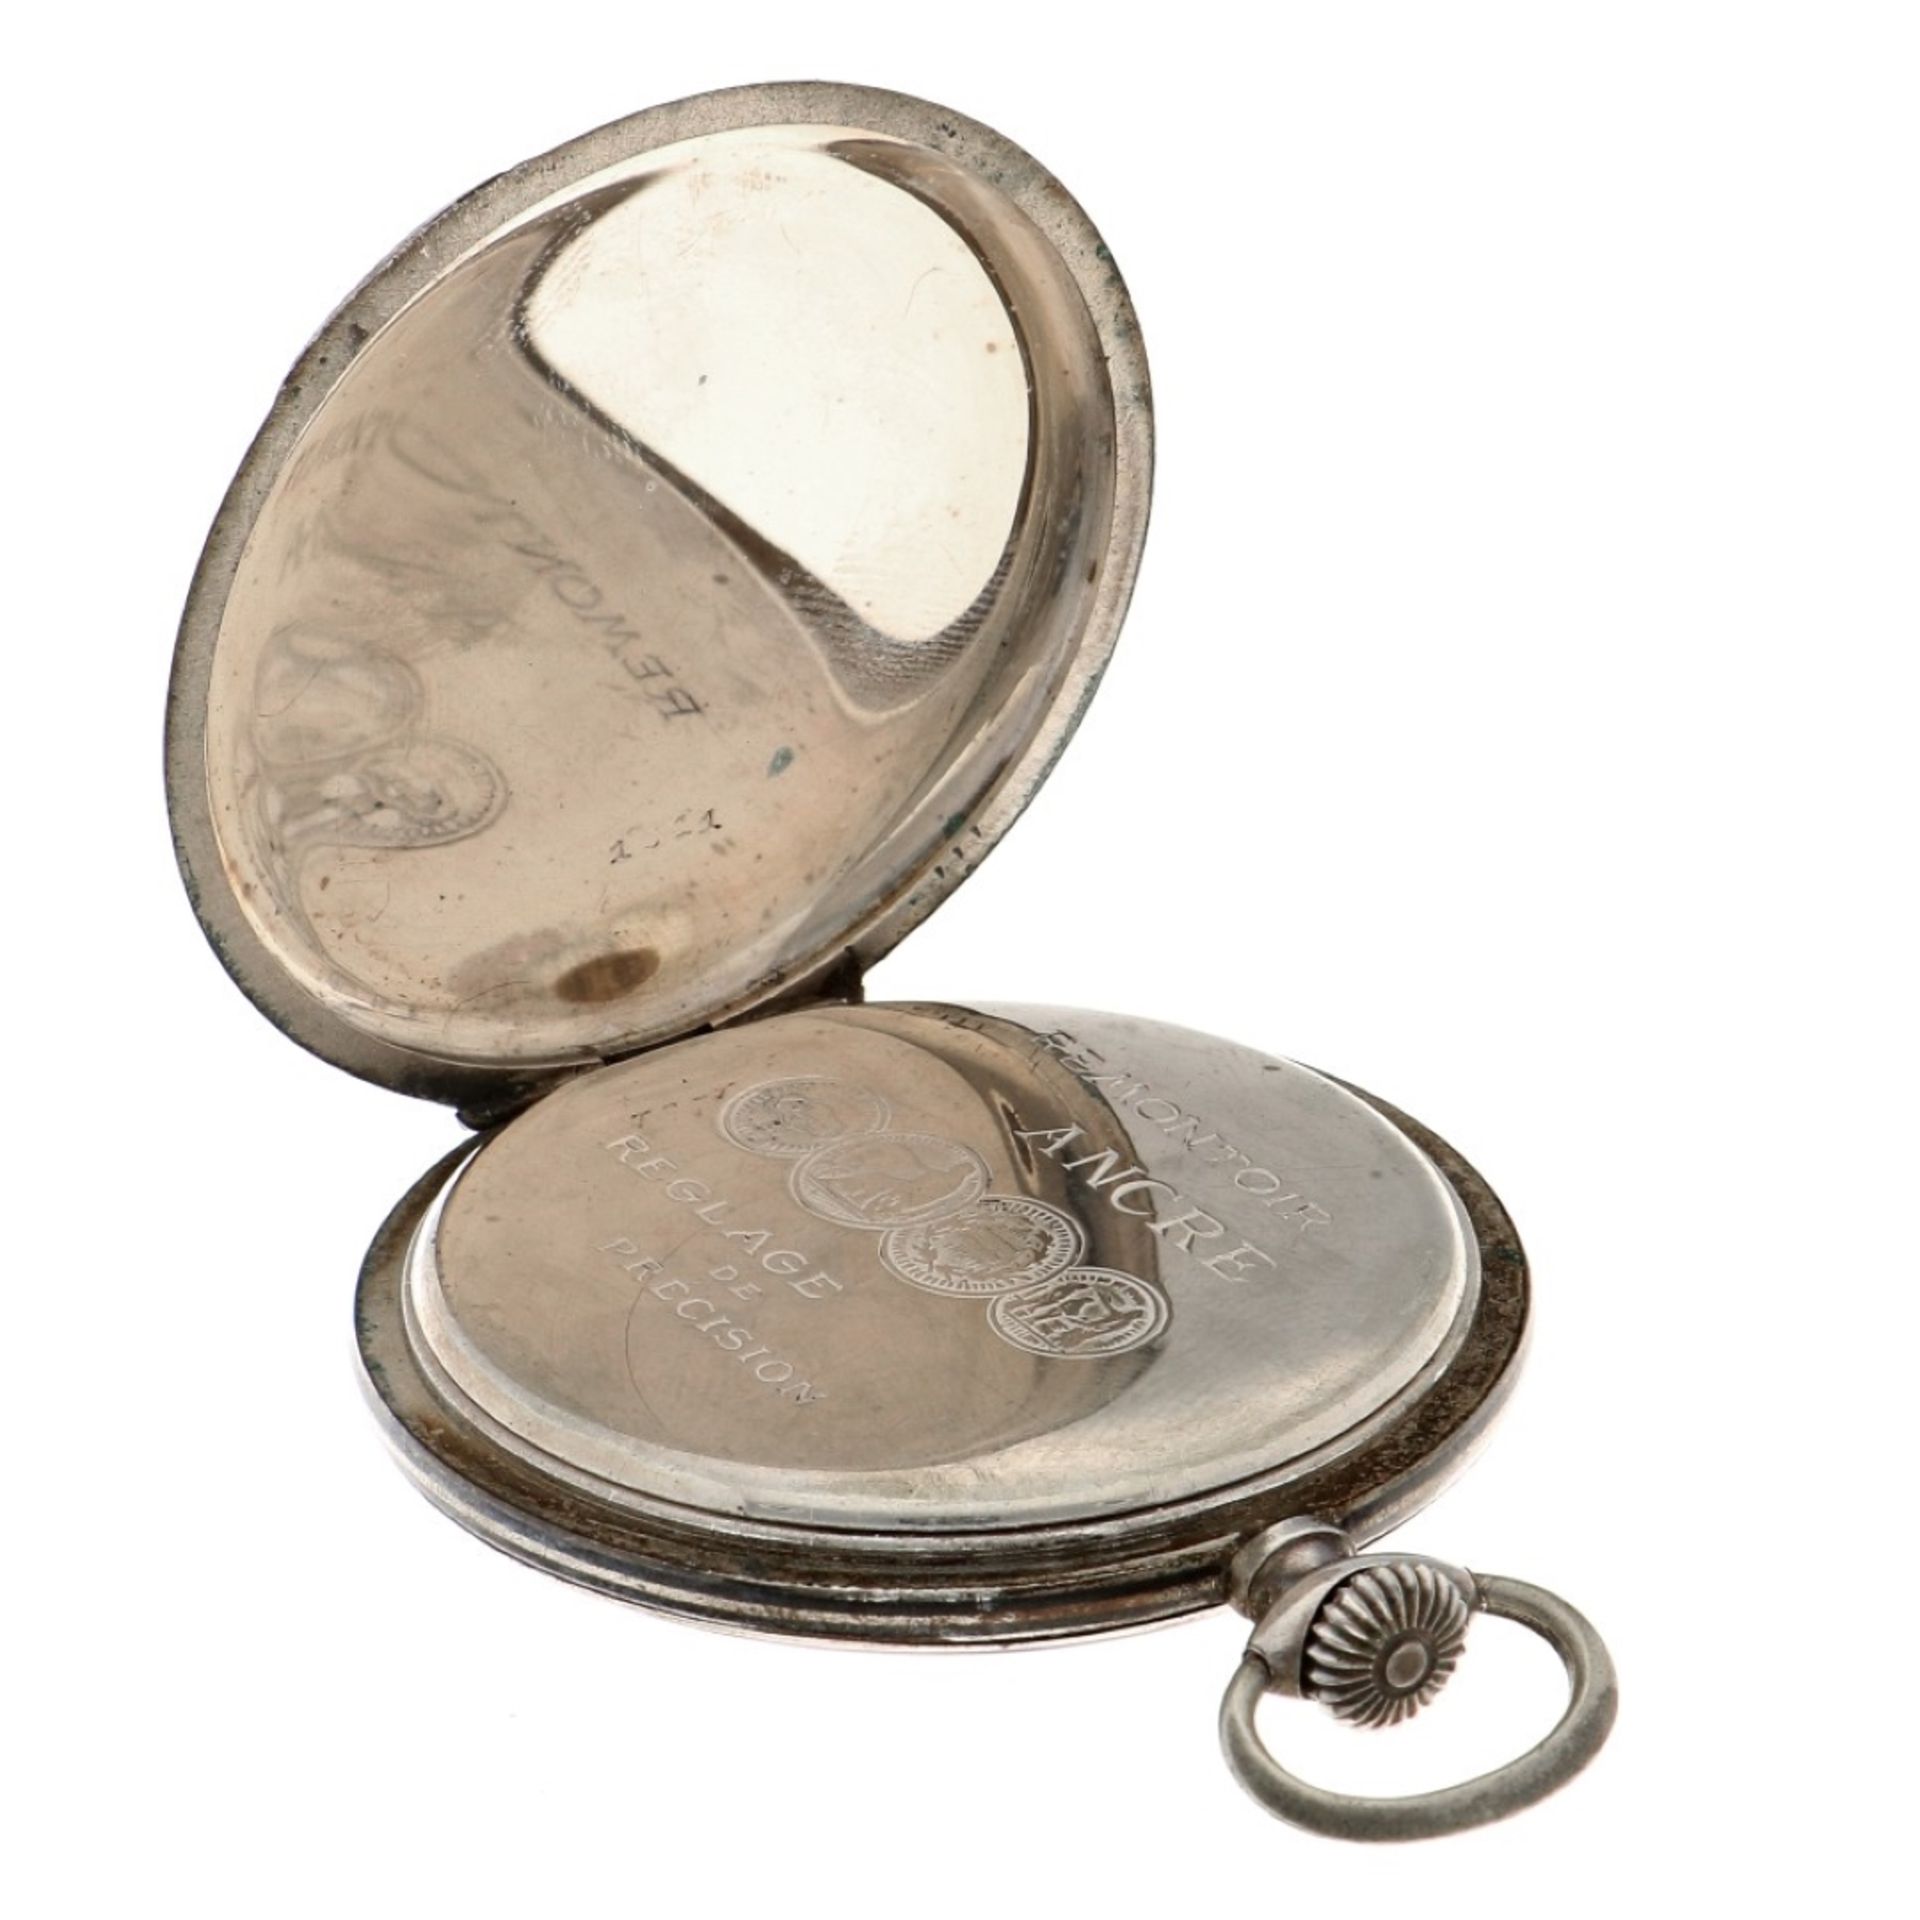 No Reserve - Zena Chronomètre Lever-Escapement silver 800/1000 - Men's pocketwatch. - Bild 4 aus 5